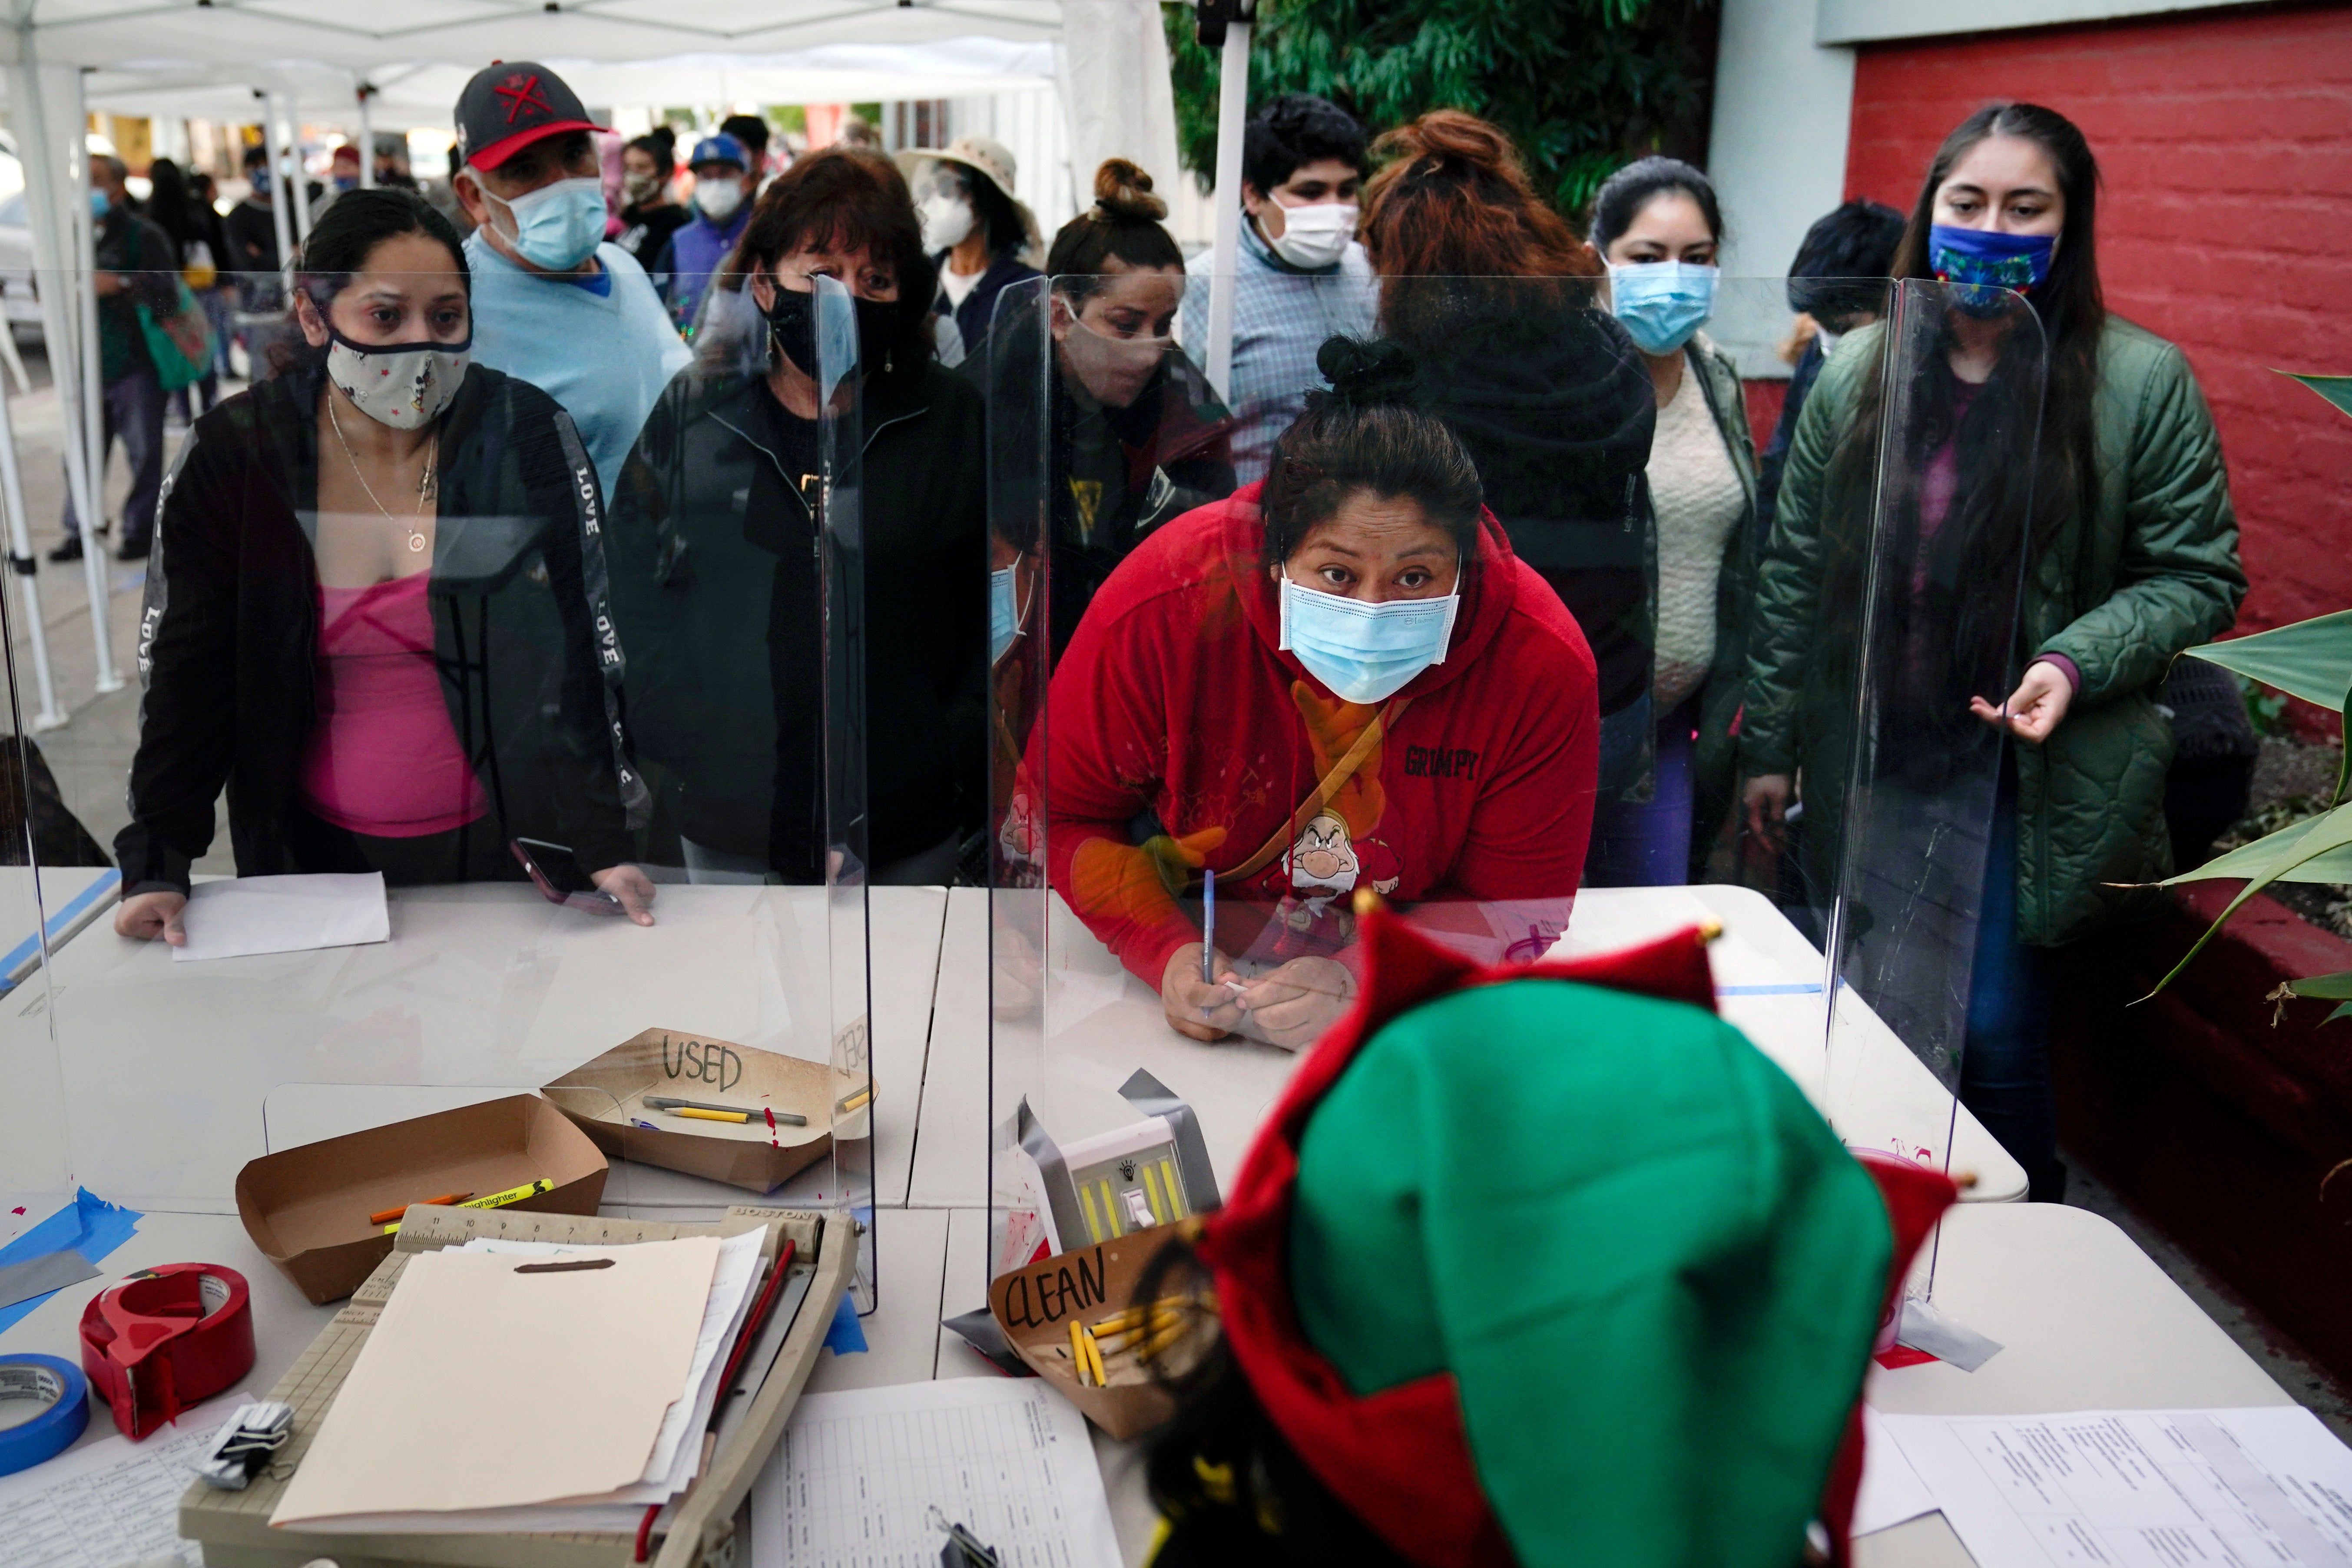 El estado ha registrado más de 1.7 millones de contagios desde el inicio de la pandemia